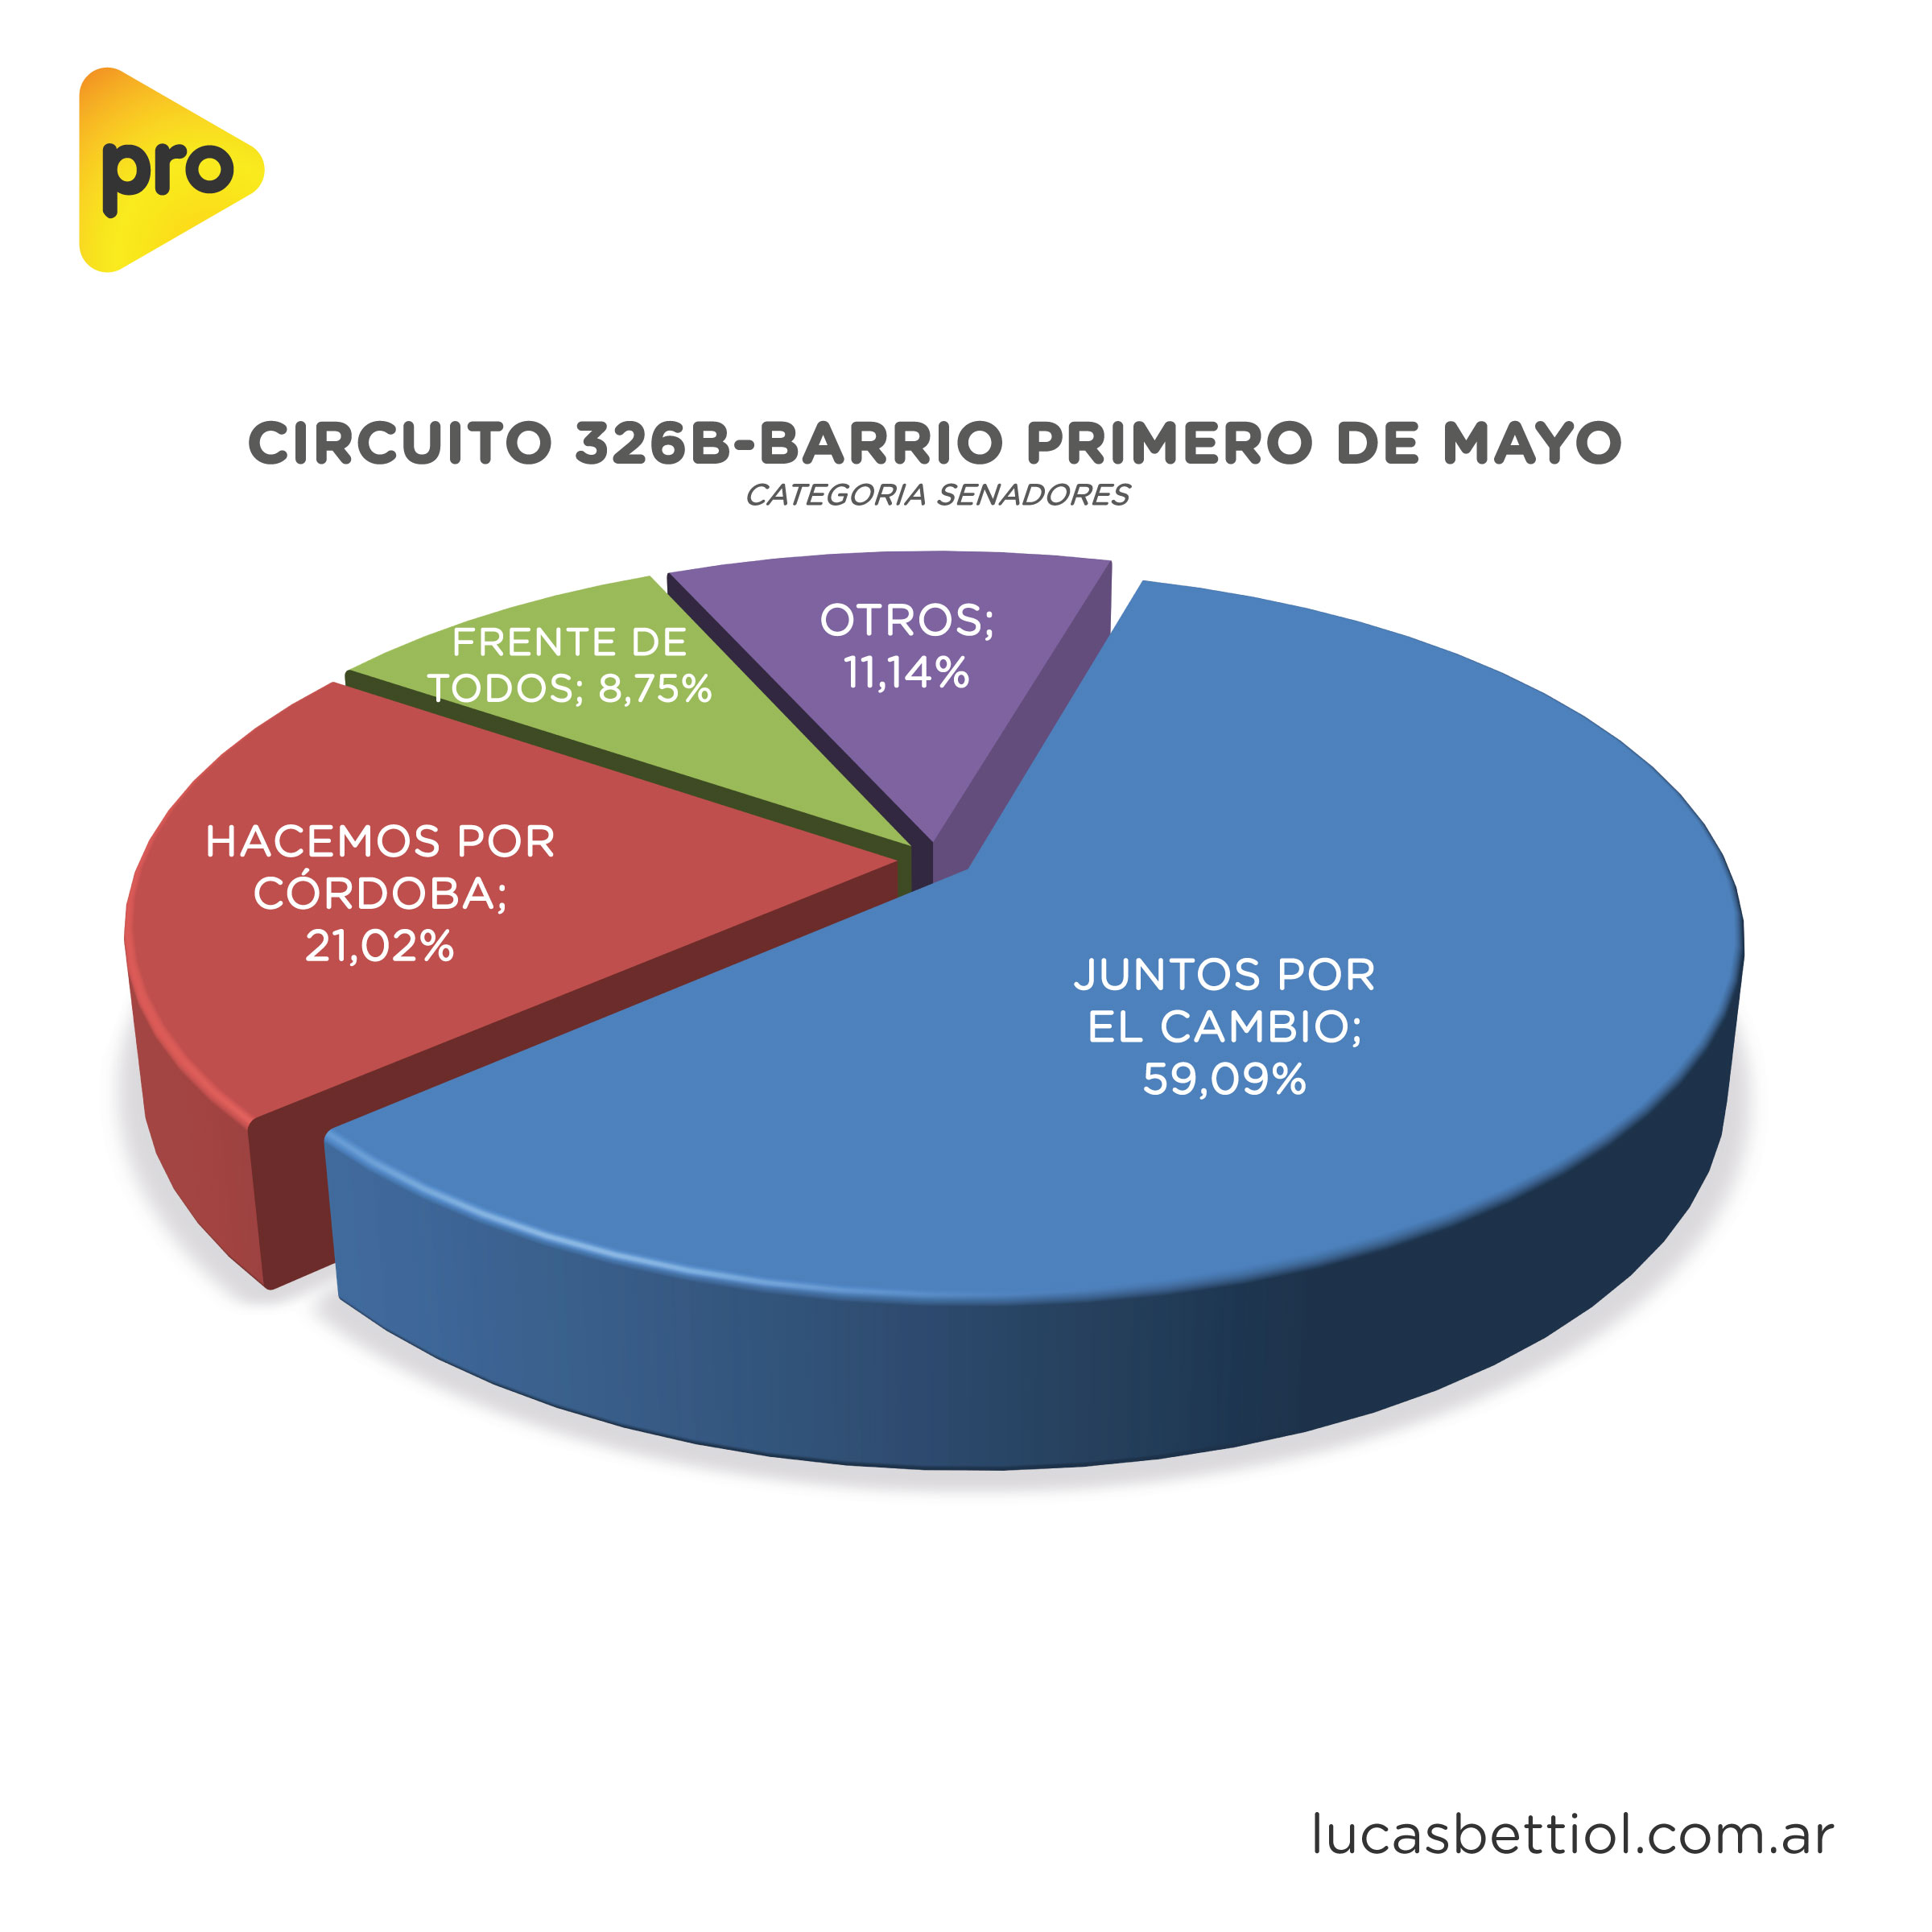 Elecciones Generales 2021 - Categoría Senadores - Gráfica de porcentuales que obtuvieron en el circuito 326B-Barrio Primero de Mayo las principales alianzas